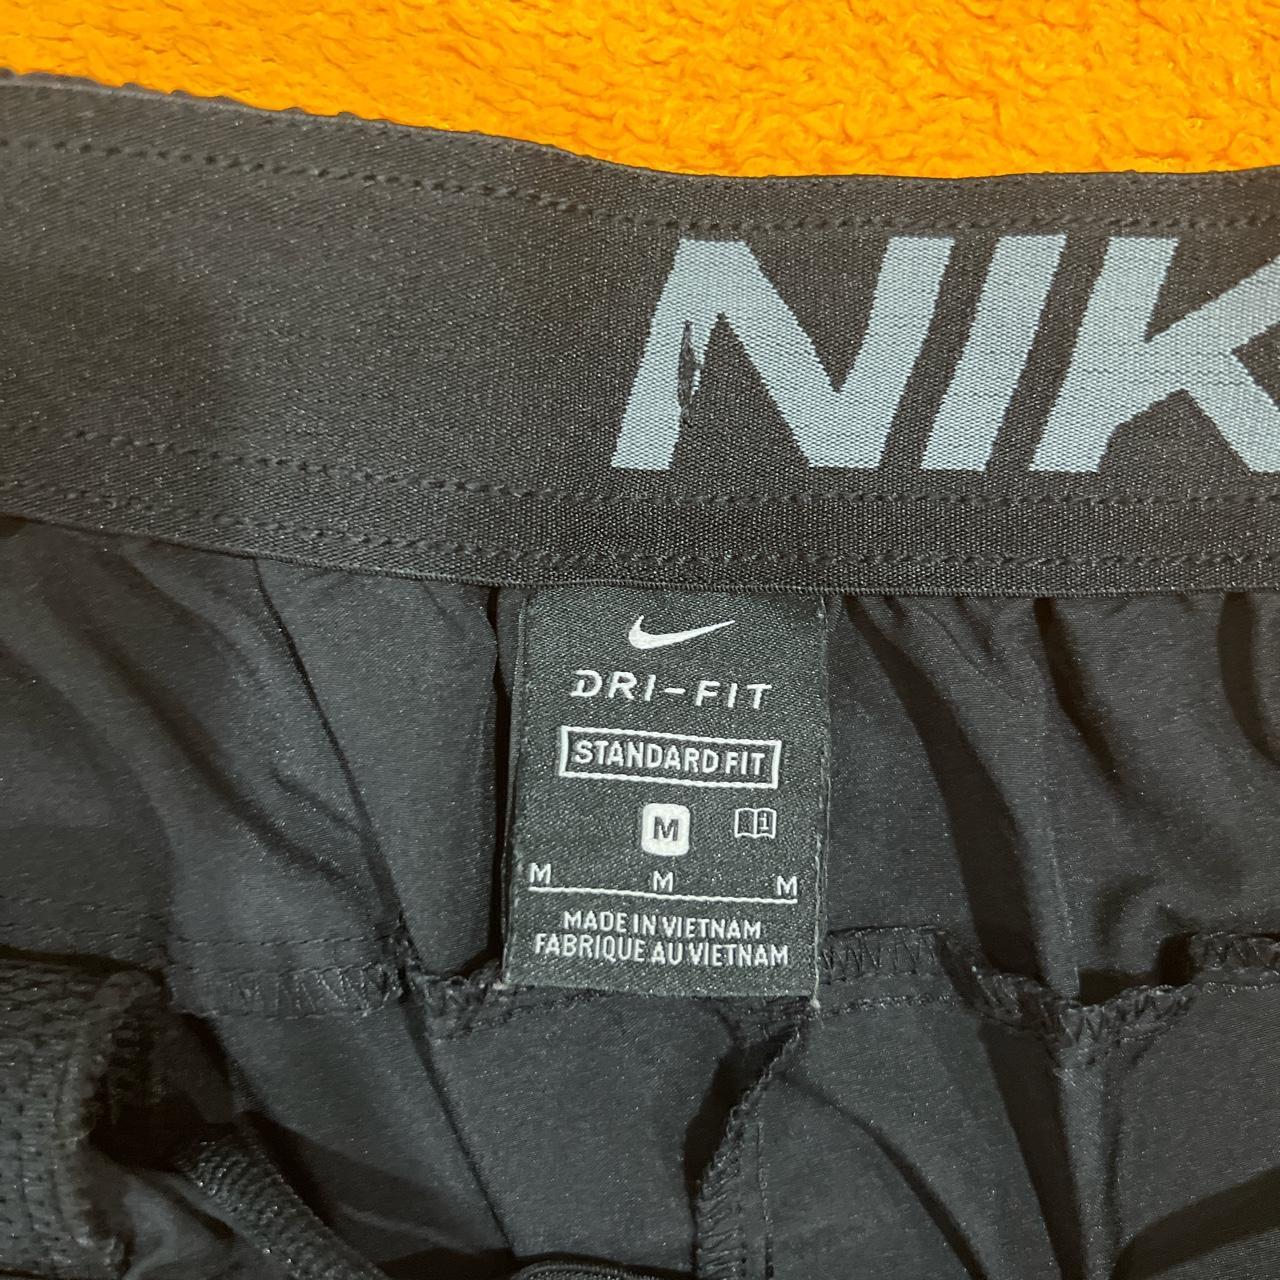 Medium black Dri-fit standard fit black shorts 9... - Depop